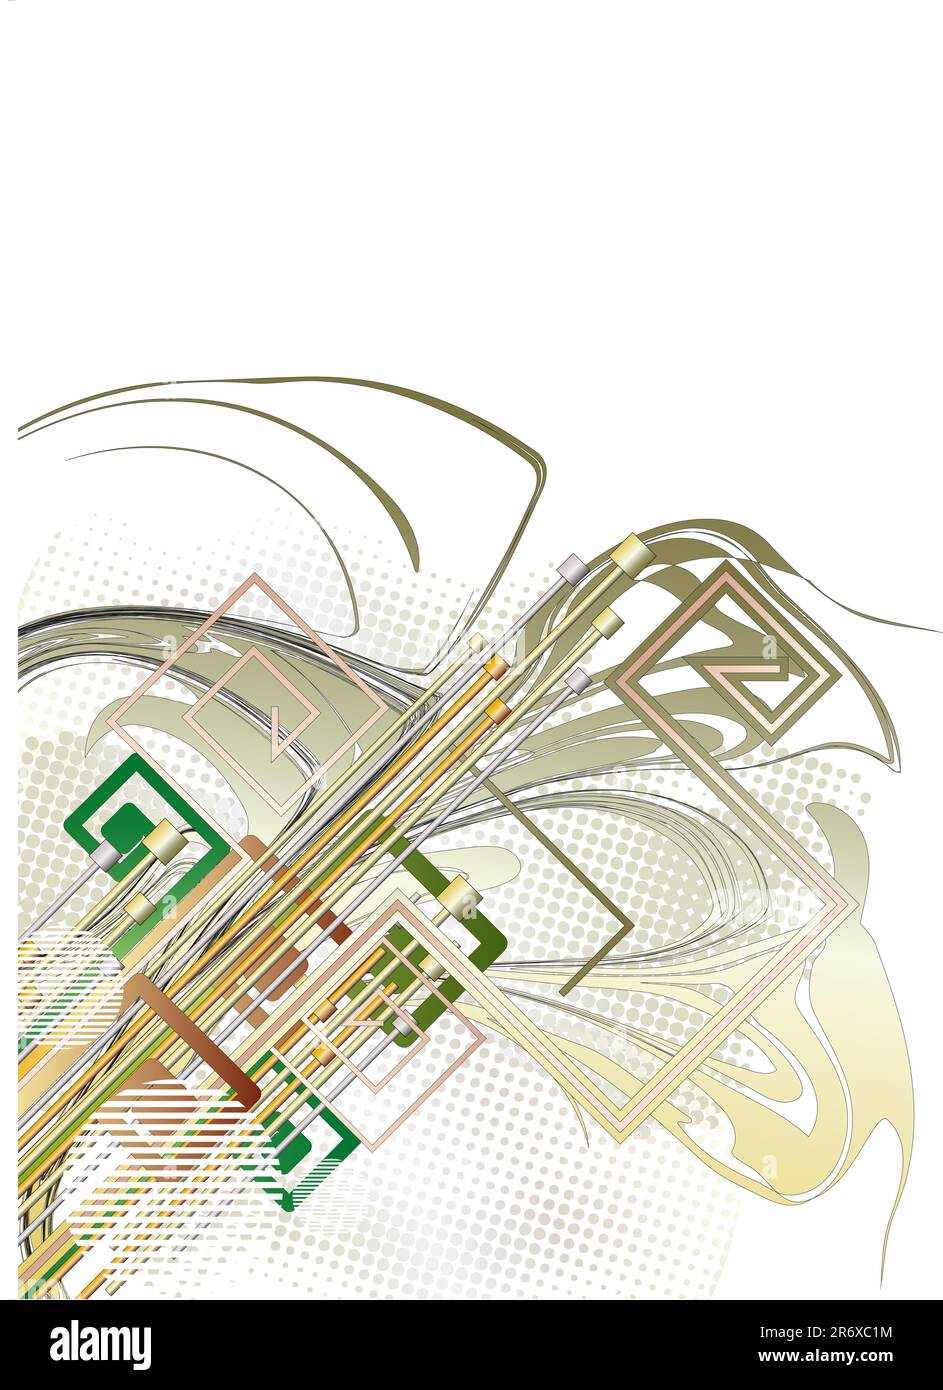 Ilustración de fondo de tecnología abstracta Ilustración del Vector